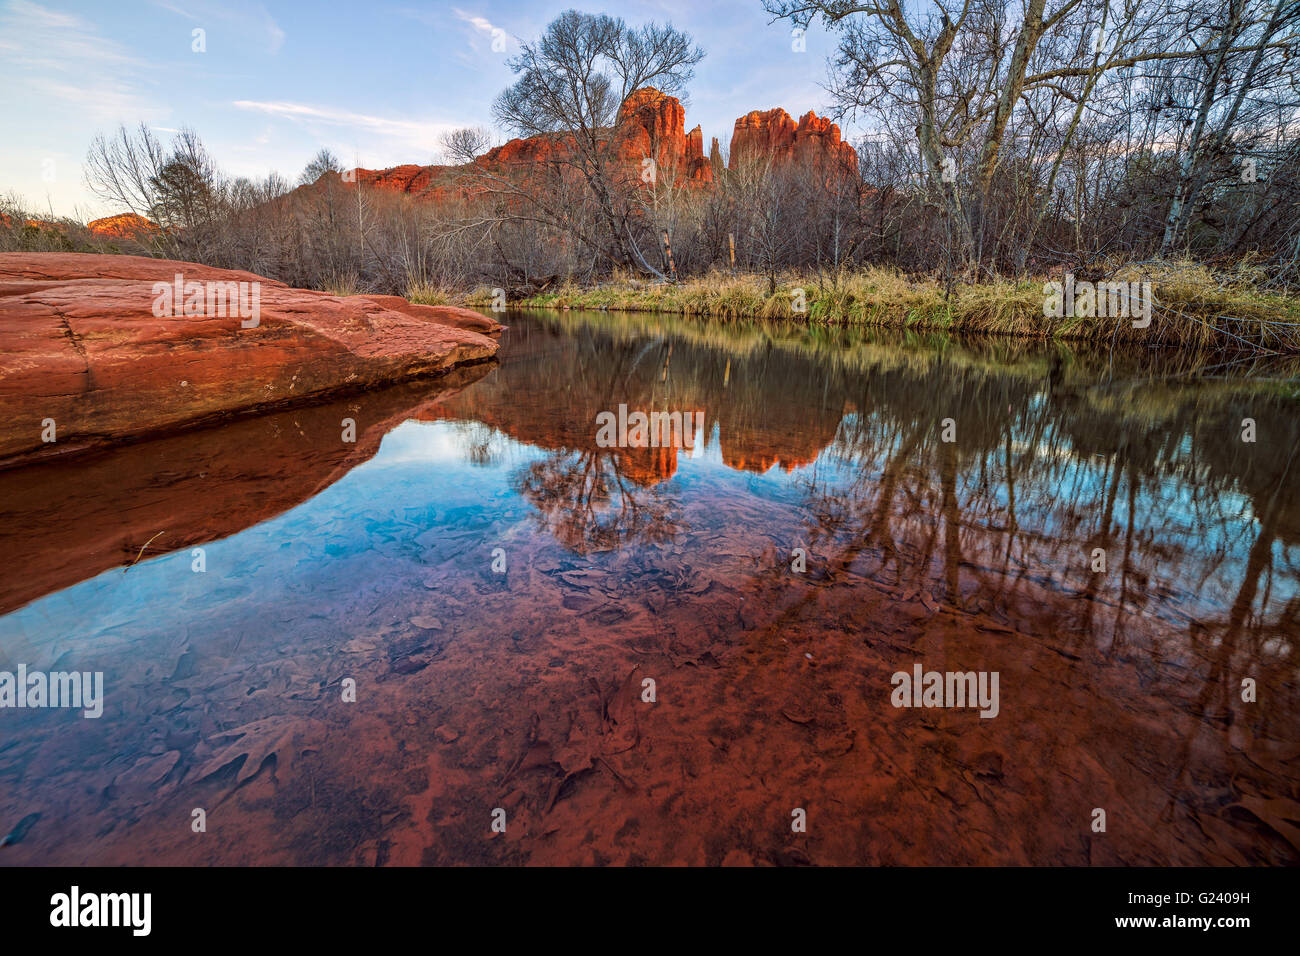 Reflet de l'eau de Cathedral Rock d'Oak Creek près de Sedona, Arizona, États-Unis Banque D'Images